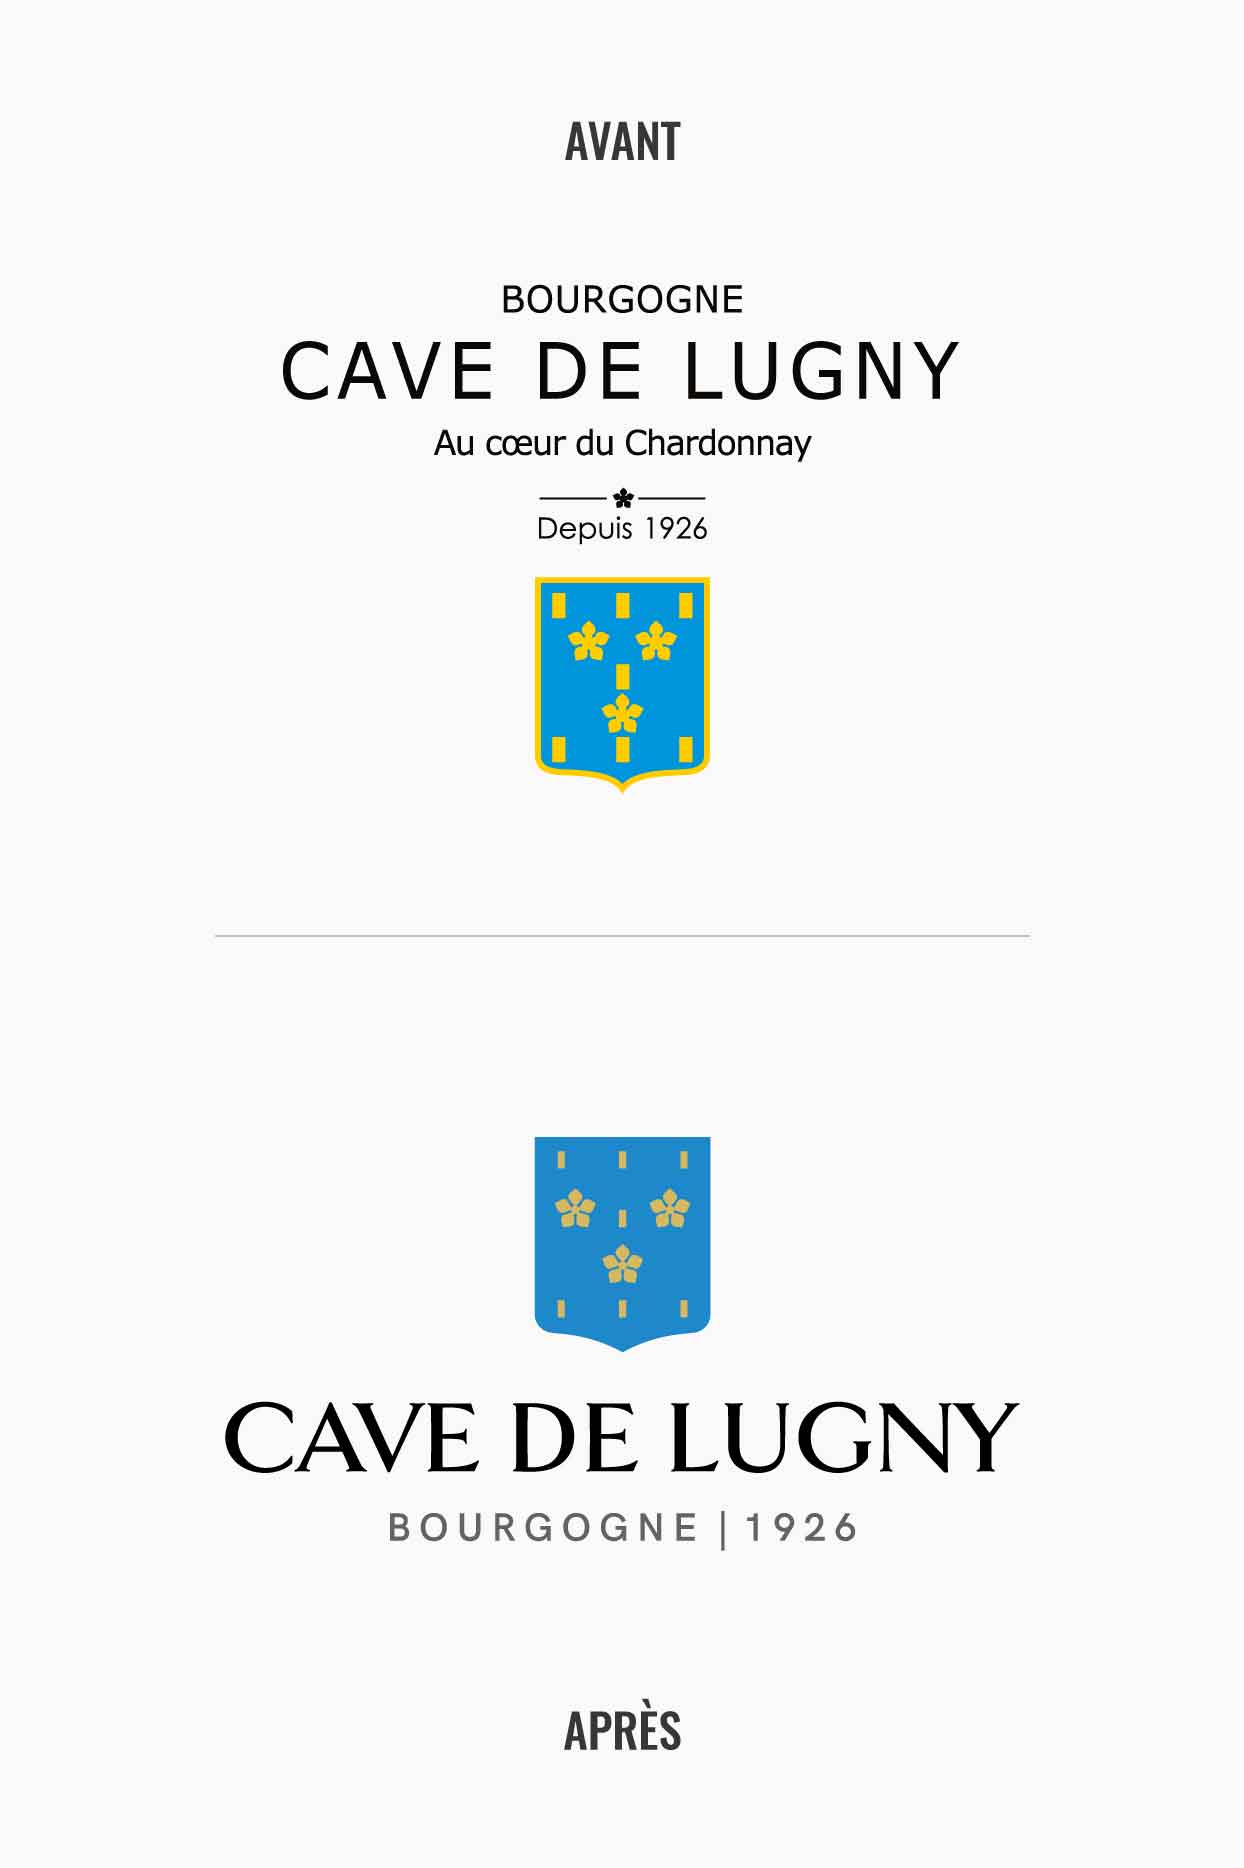 Avant après logo de la Cave de Lugny | Réalisation Discovery - agence de communication Reims & Paris